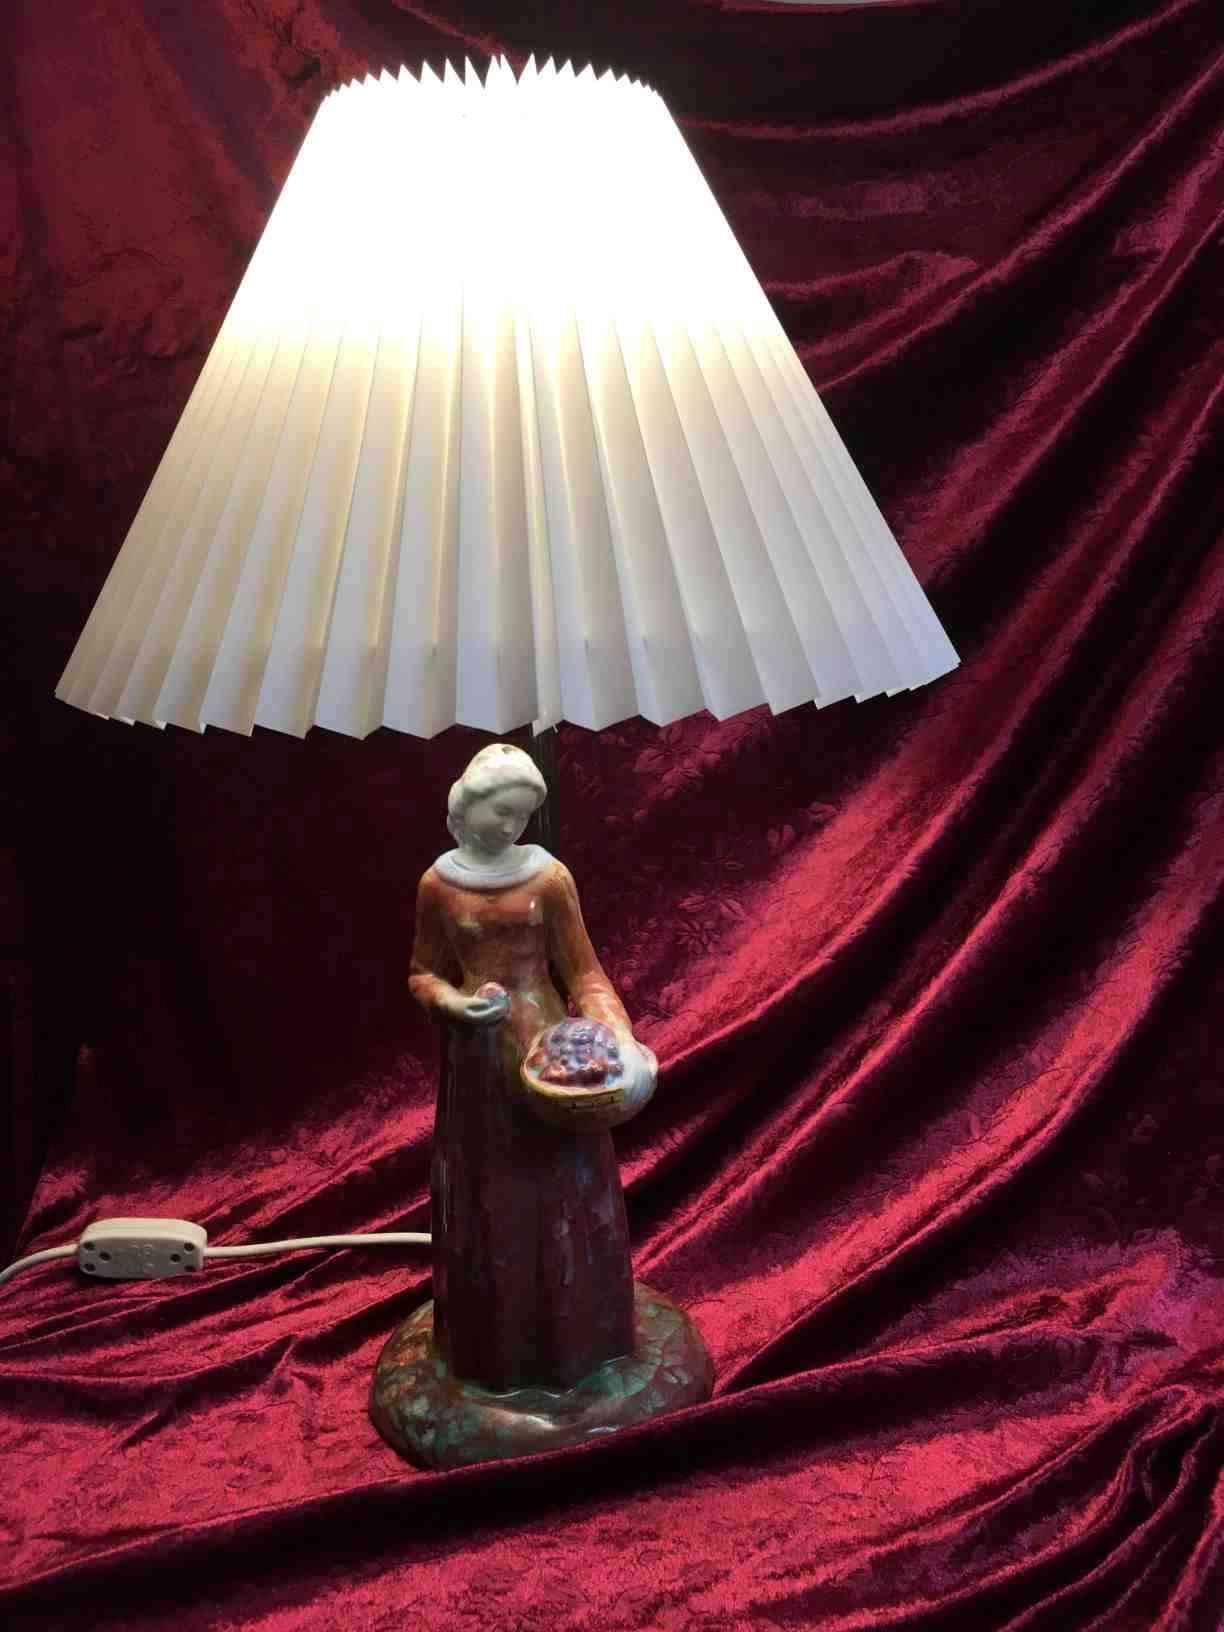 Michael Andersen Bordlampe, prydet med kvinde, keramik, med Persiaglasur, lampestamme af bruneret messing, plisseret skærm, totalhøjde 53 cm. I perfekt stand. Solgt